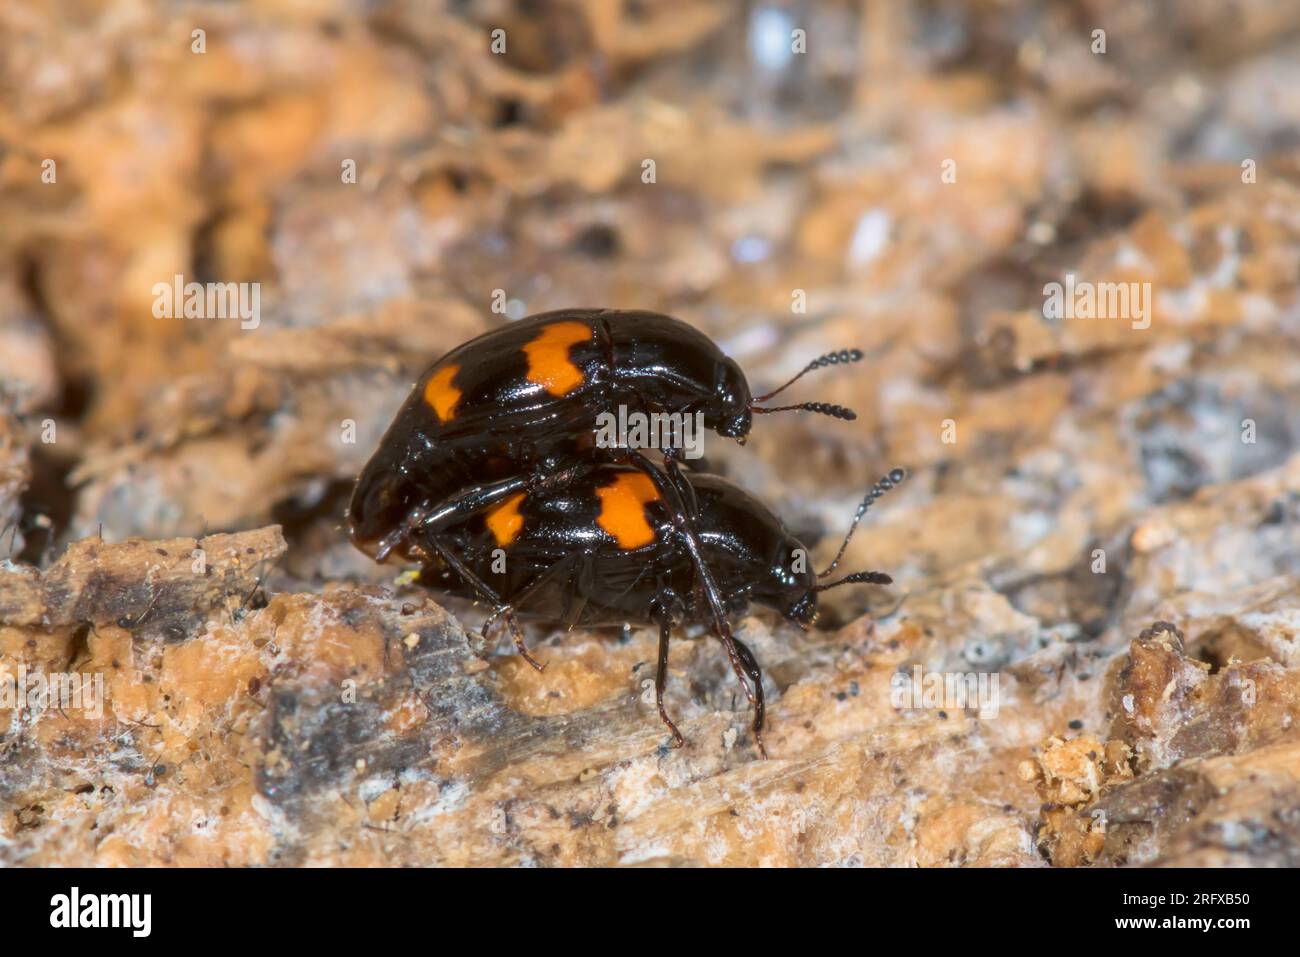 Orange spotted Scaphidium or Shining Fungus Beetle (Scaphidium quadrimaculatum). Staphilinidae. Sussex, UK Stock Photo